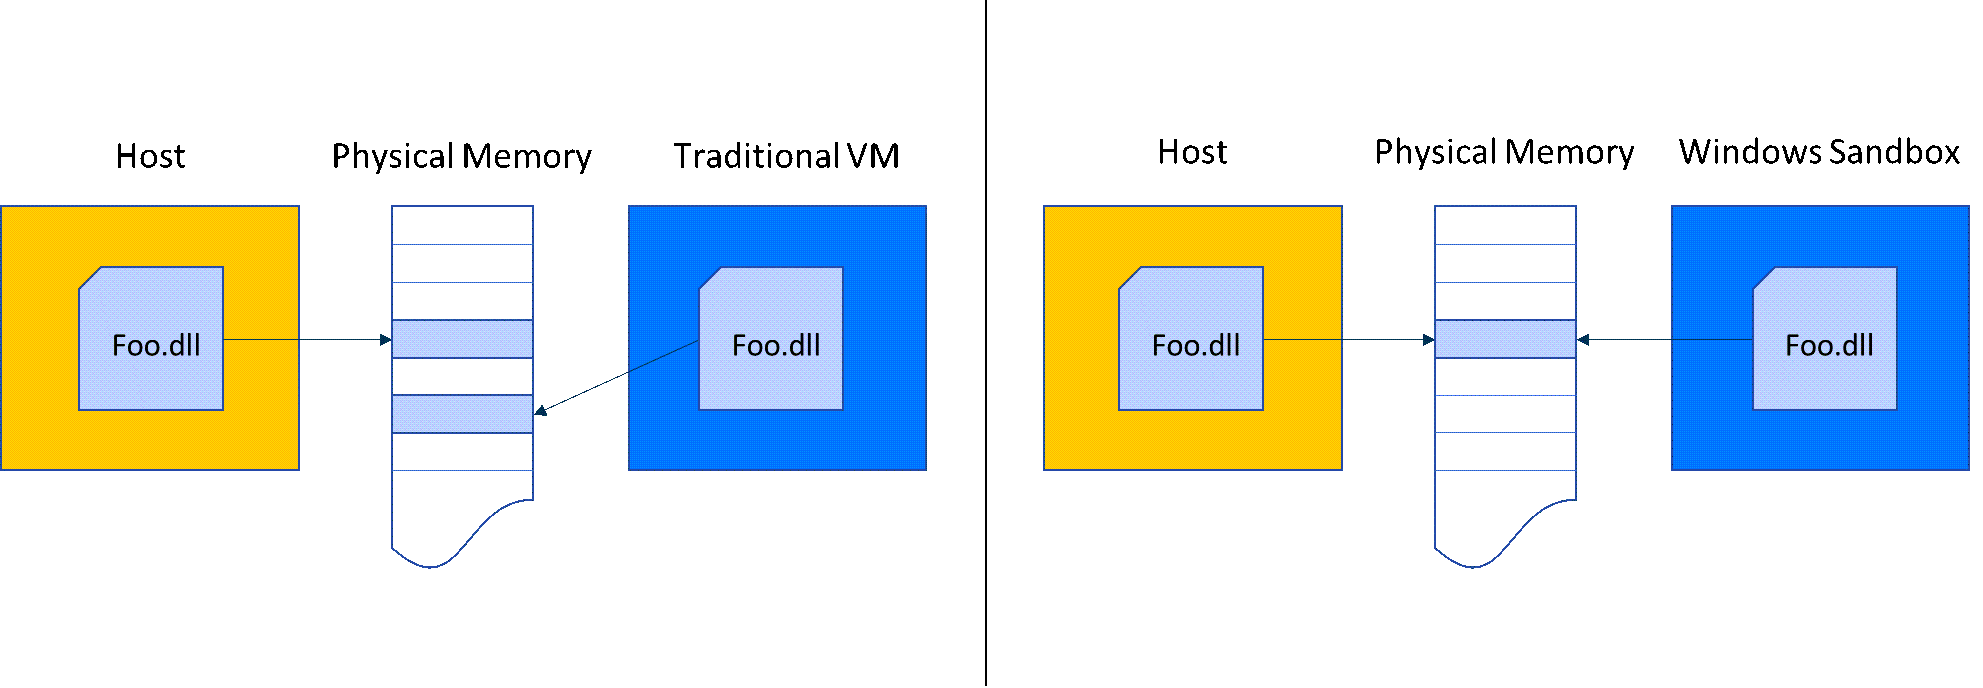 Диаграмма сравнивает объем памяти в Песочница Windows и традиционную виртуальную машину.